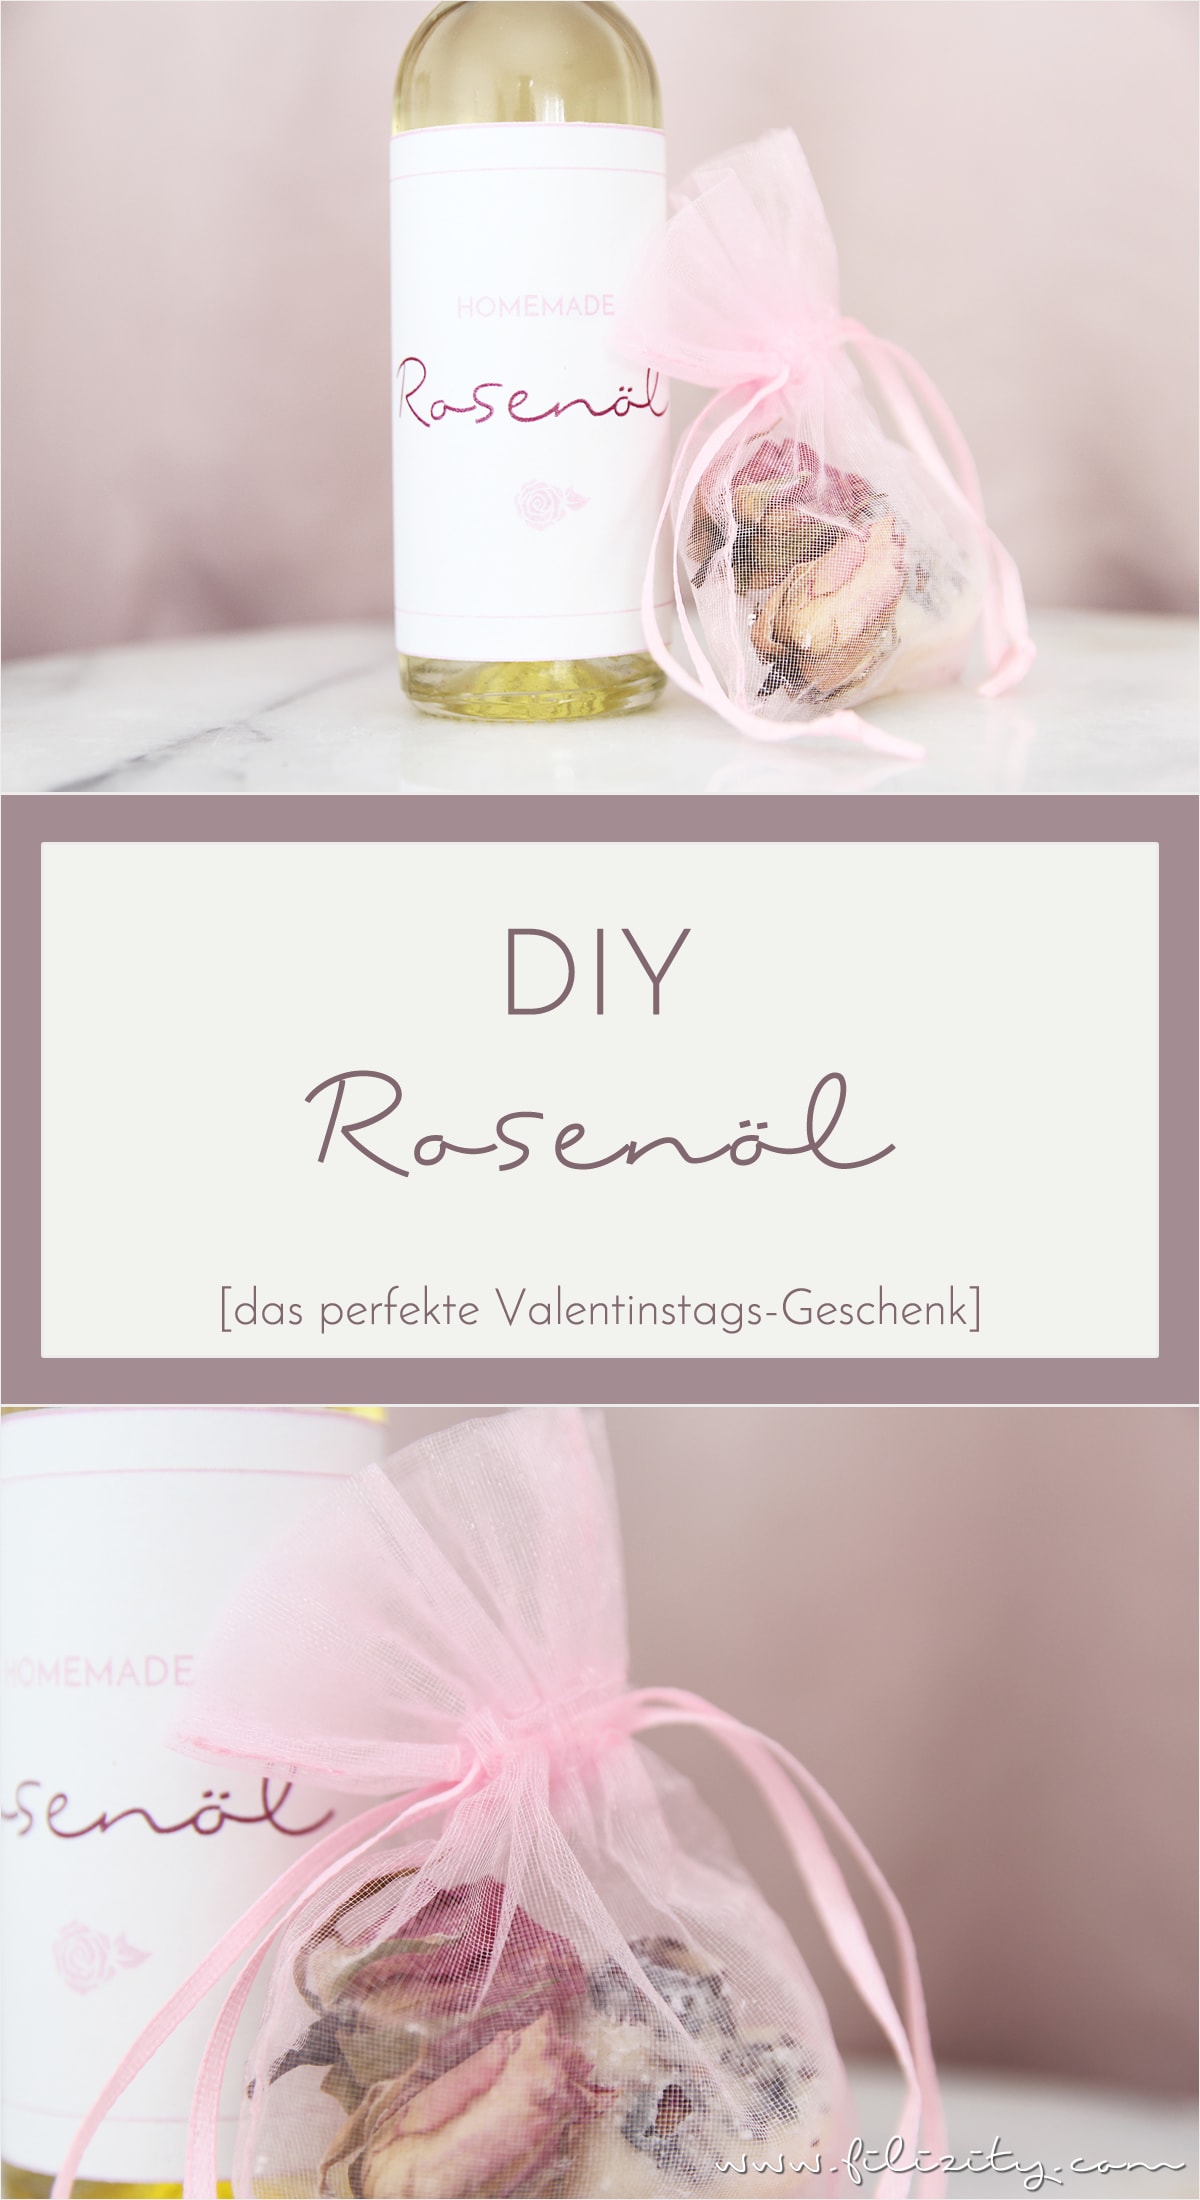 Rosenöl selber machen – perfekte Hautpflege und toles Valentinstags-Geschenk!